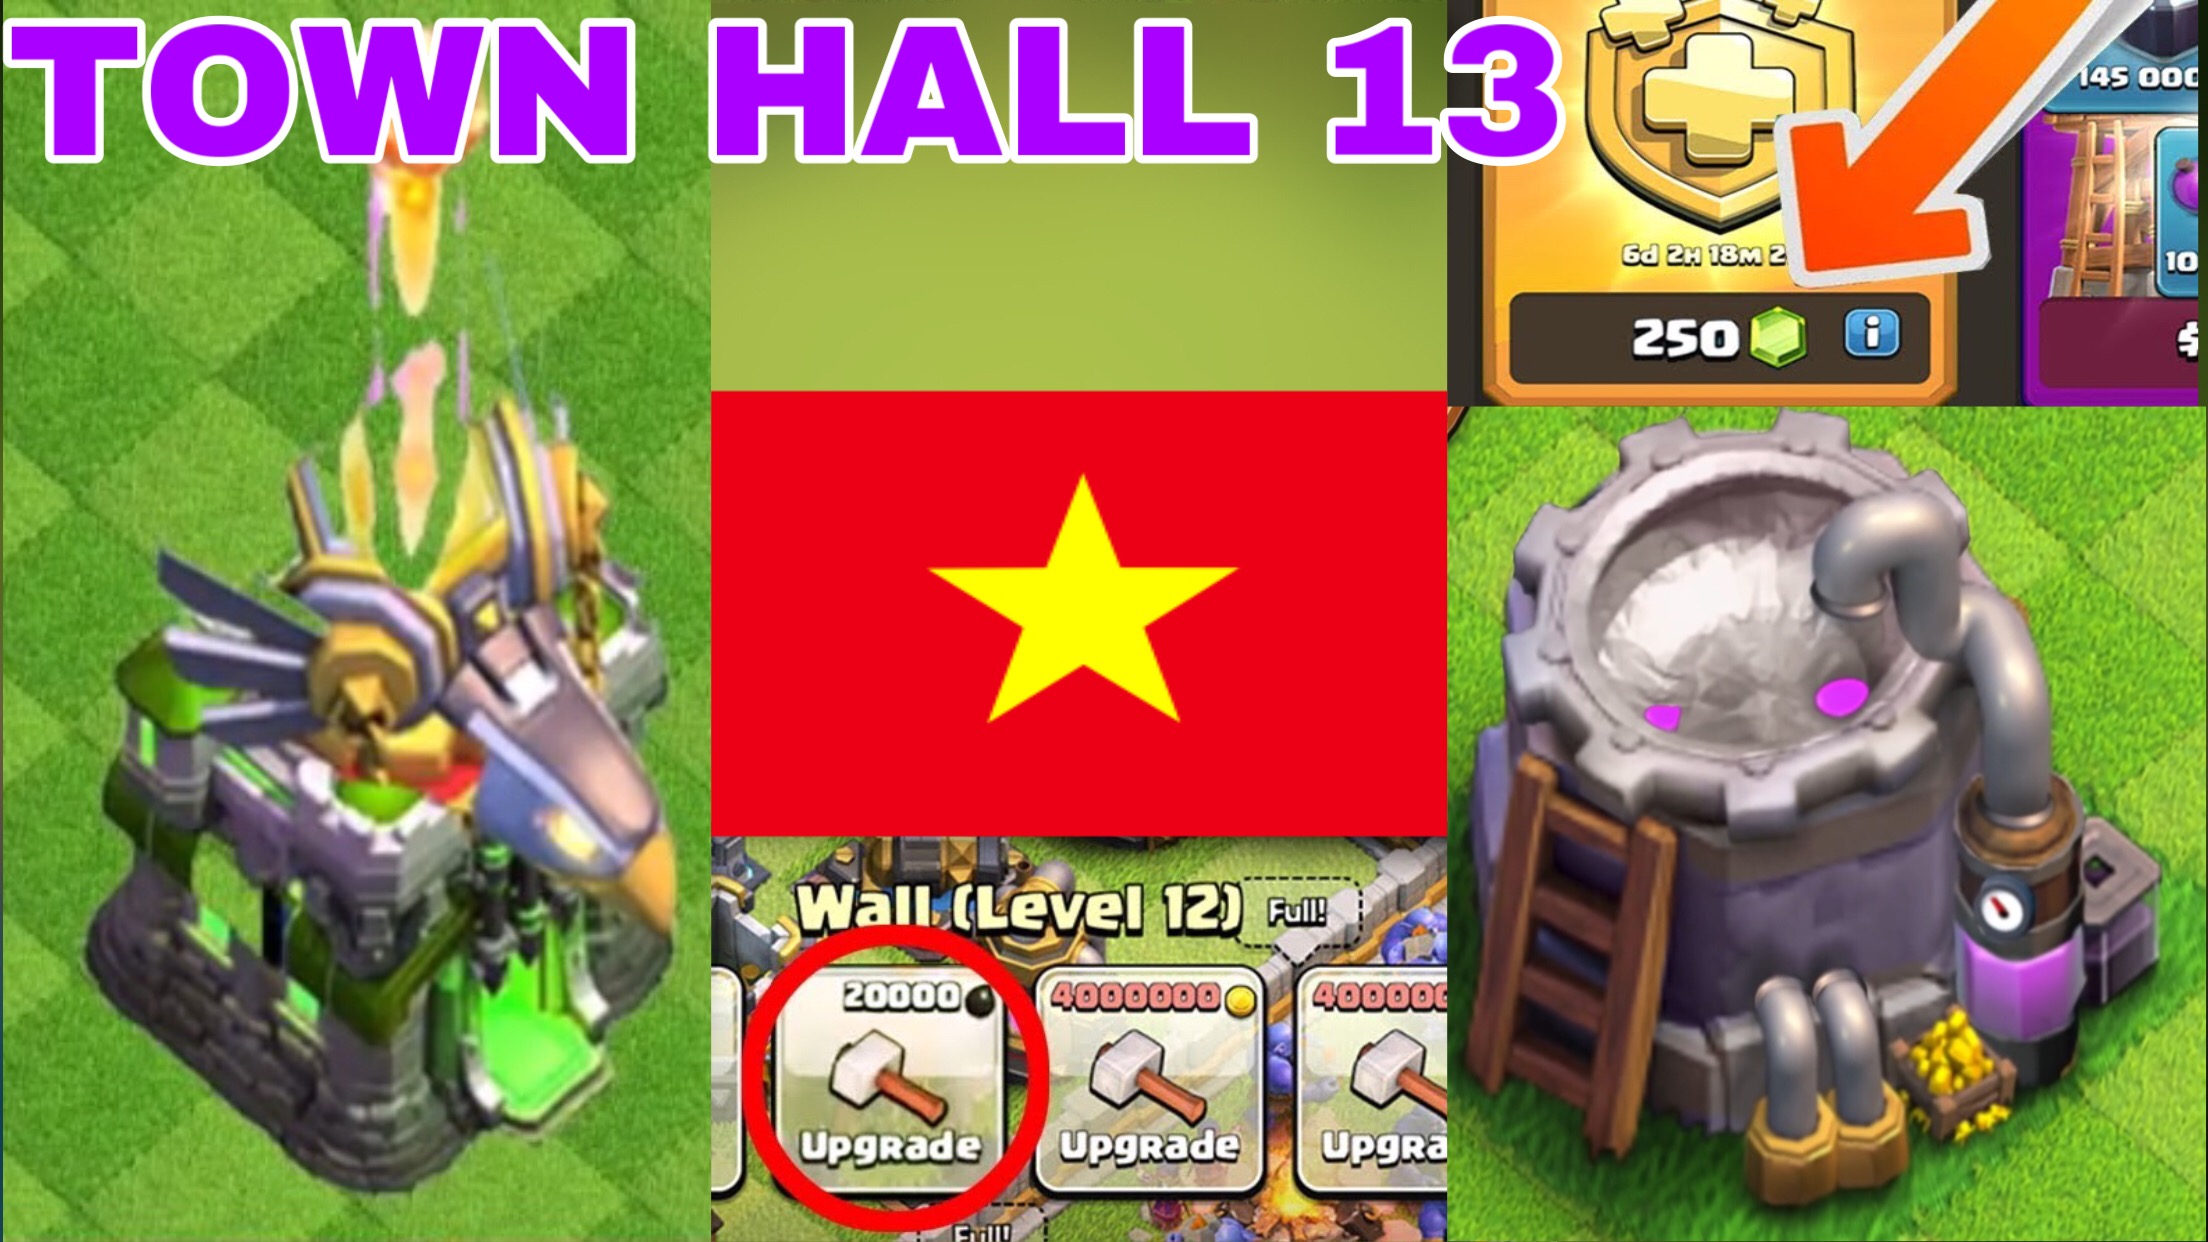 UPDATE TOWN HALL 13 Clash of clans - TOP 5 ĐIỀU KHÔNG XẢY RA